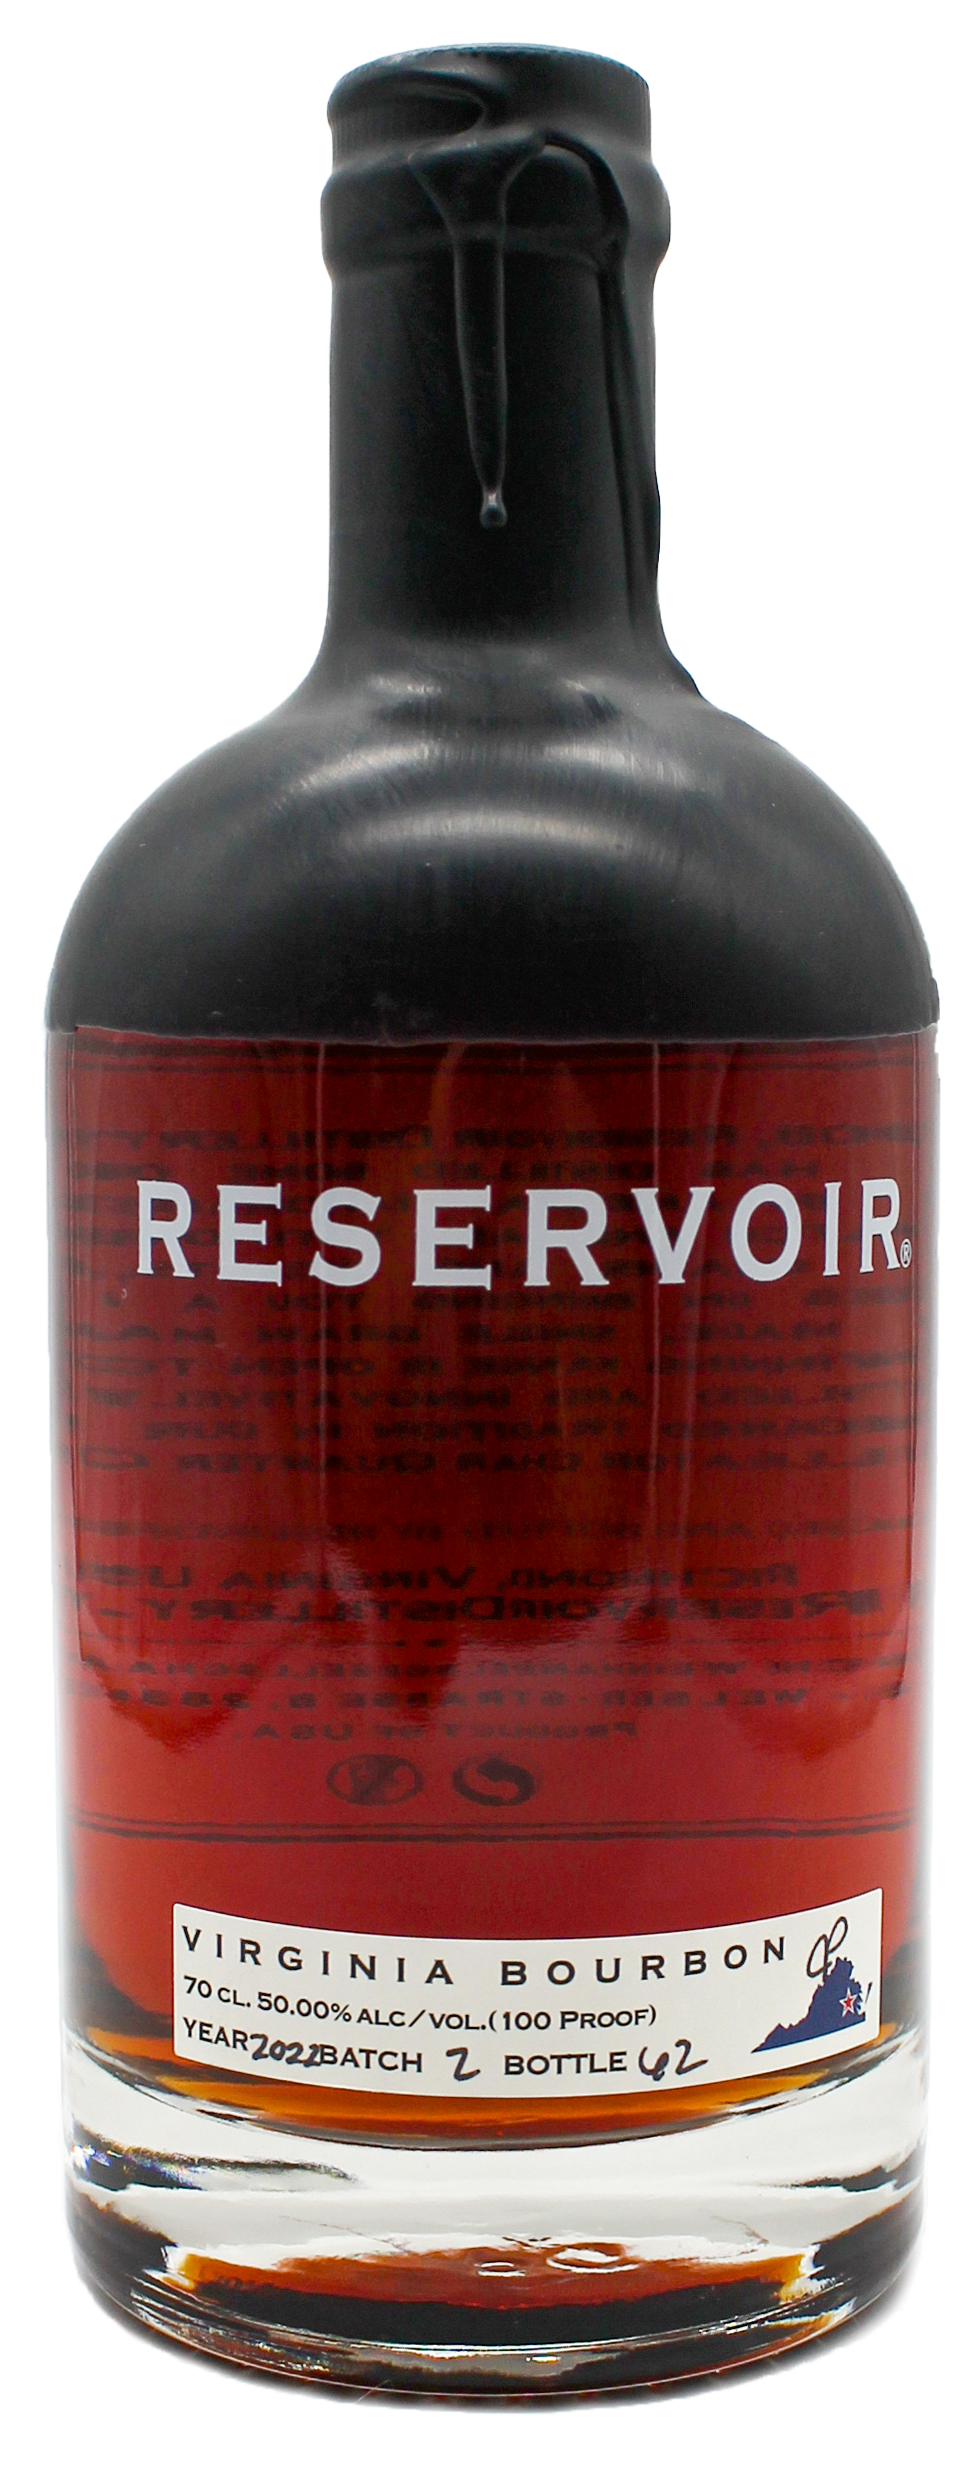 Reservoir "Bourbon"